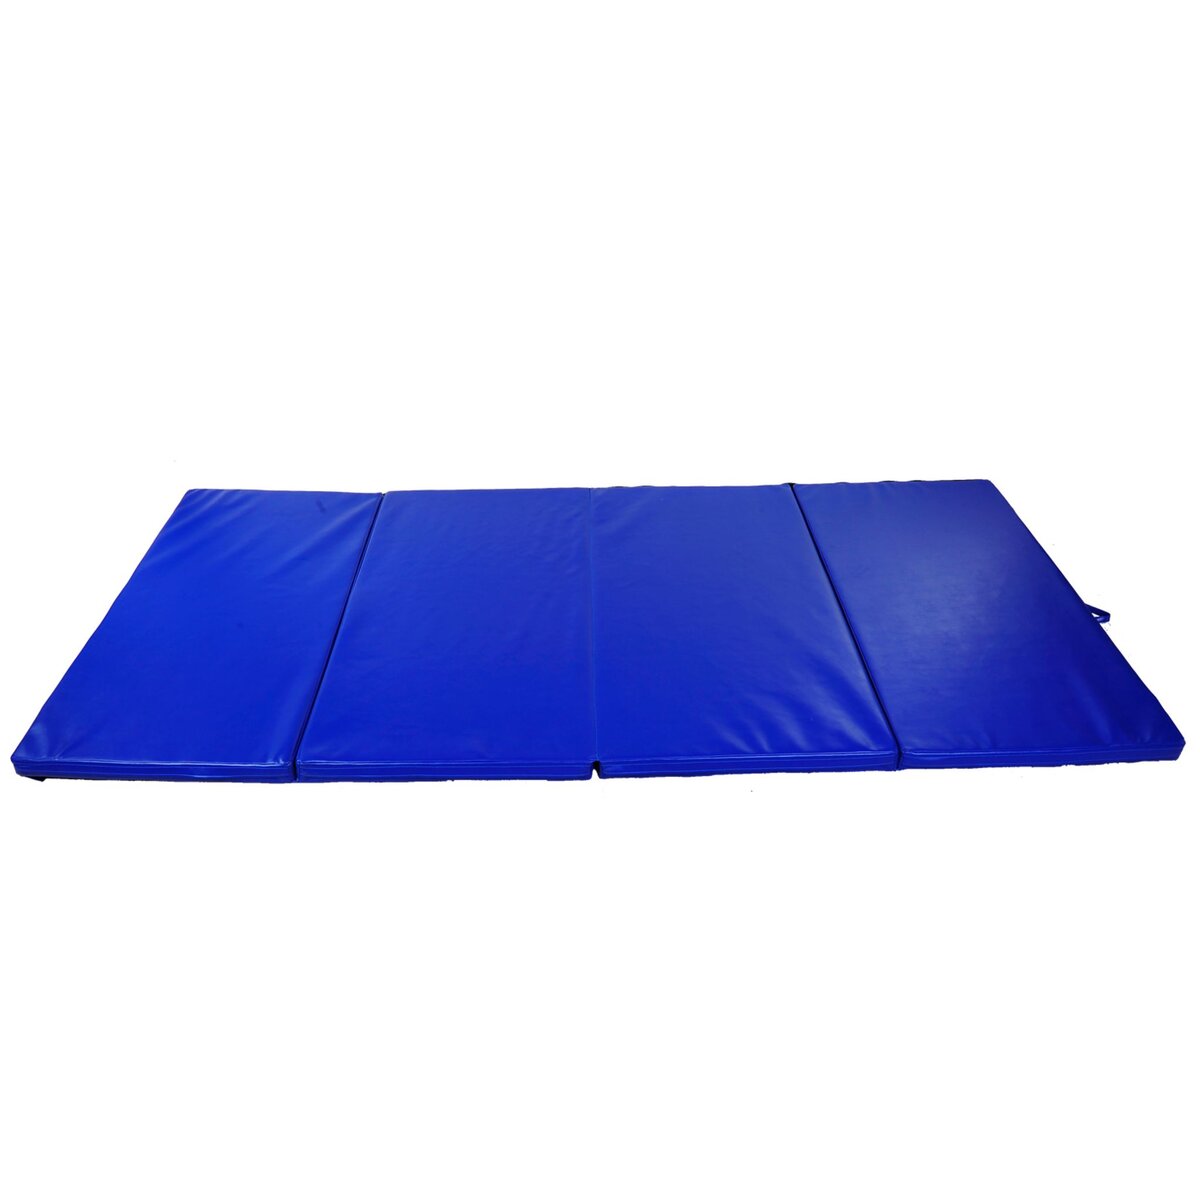 HOMCOM Tapis de sol gymnastique Fitness pliable portable rembourrage mousse 5 cm grand confort revêtement synthétique dim. 2,93L m x 1,15l m bleu